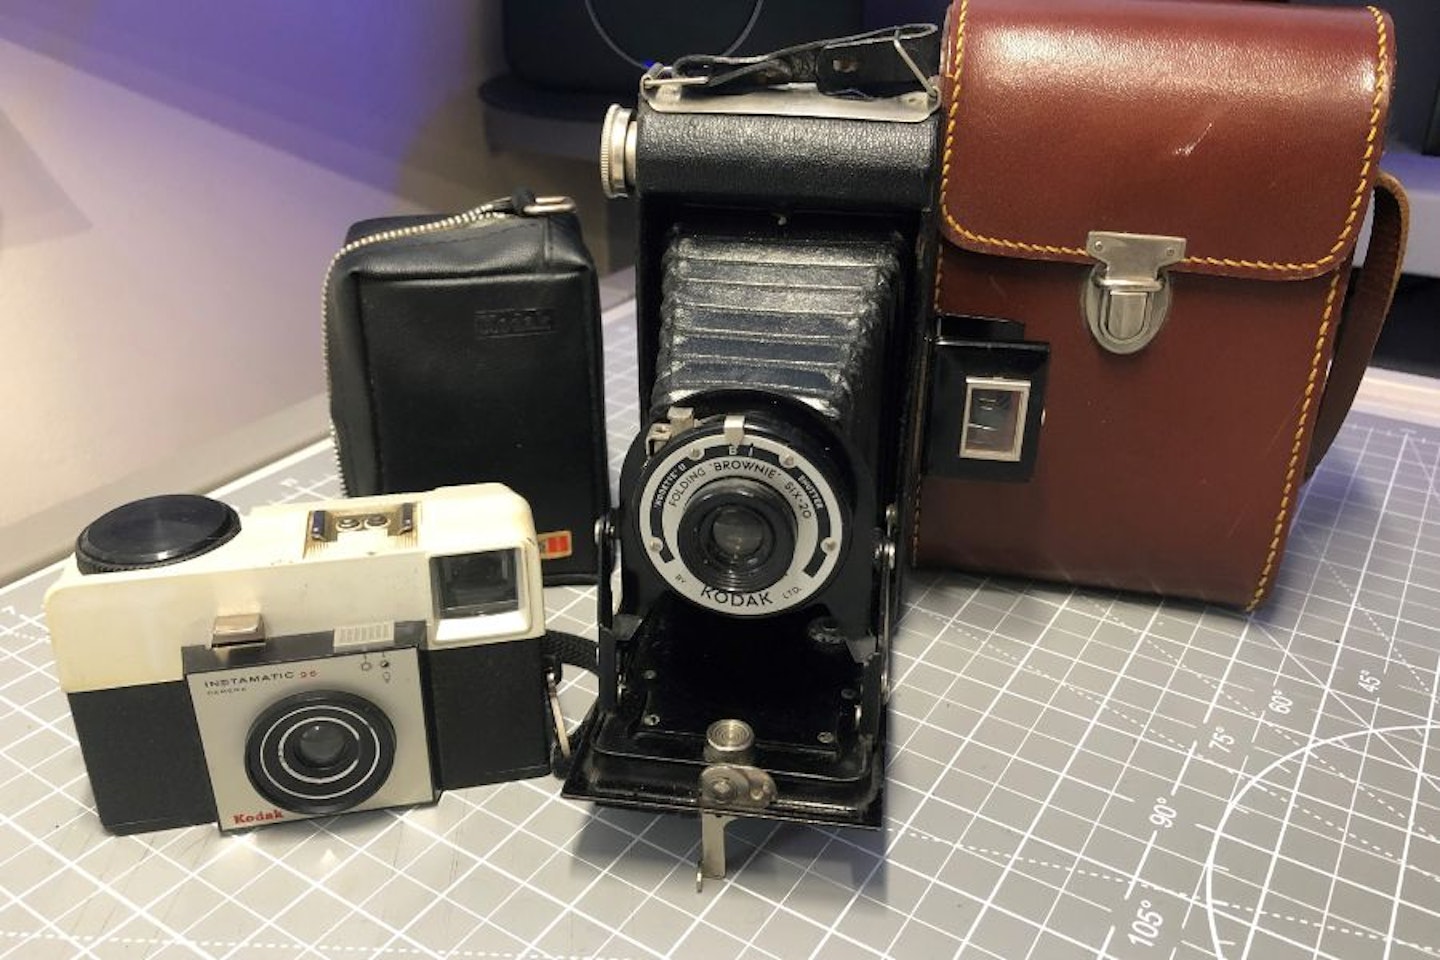 Some vintage travel cameras